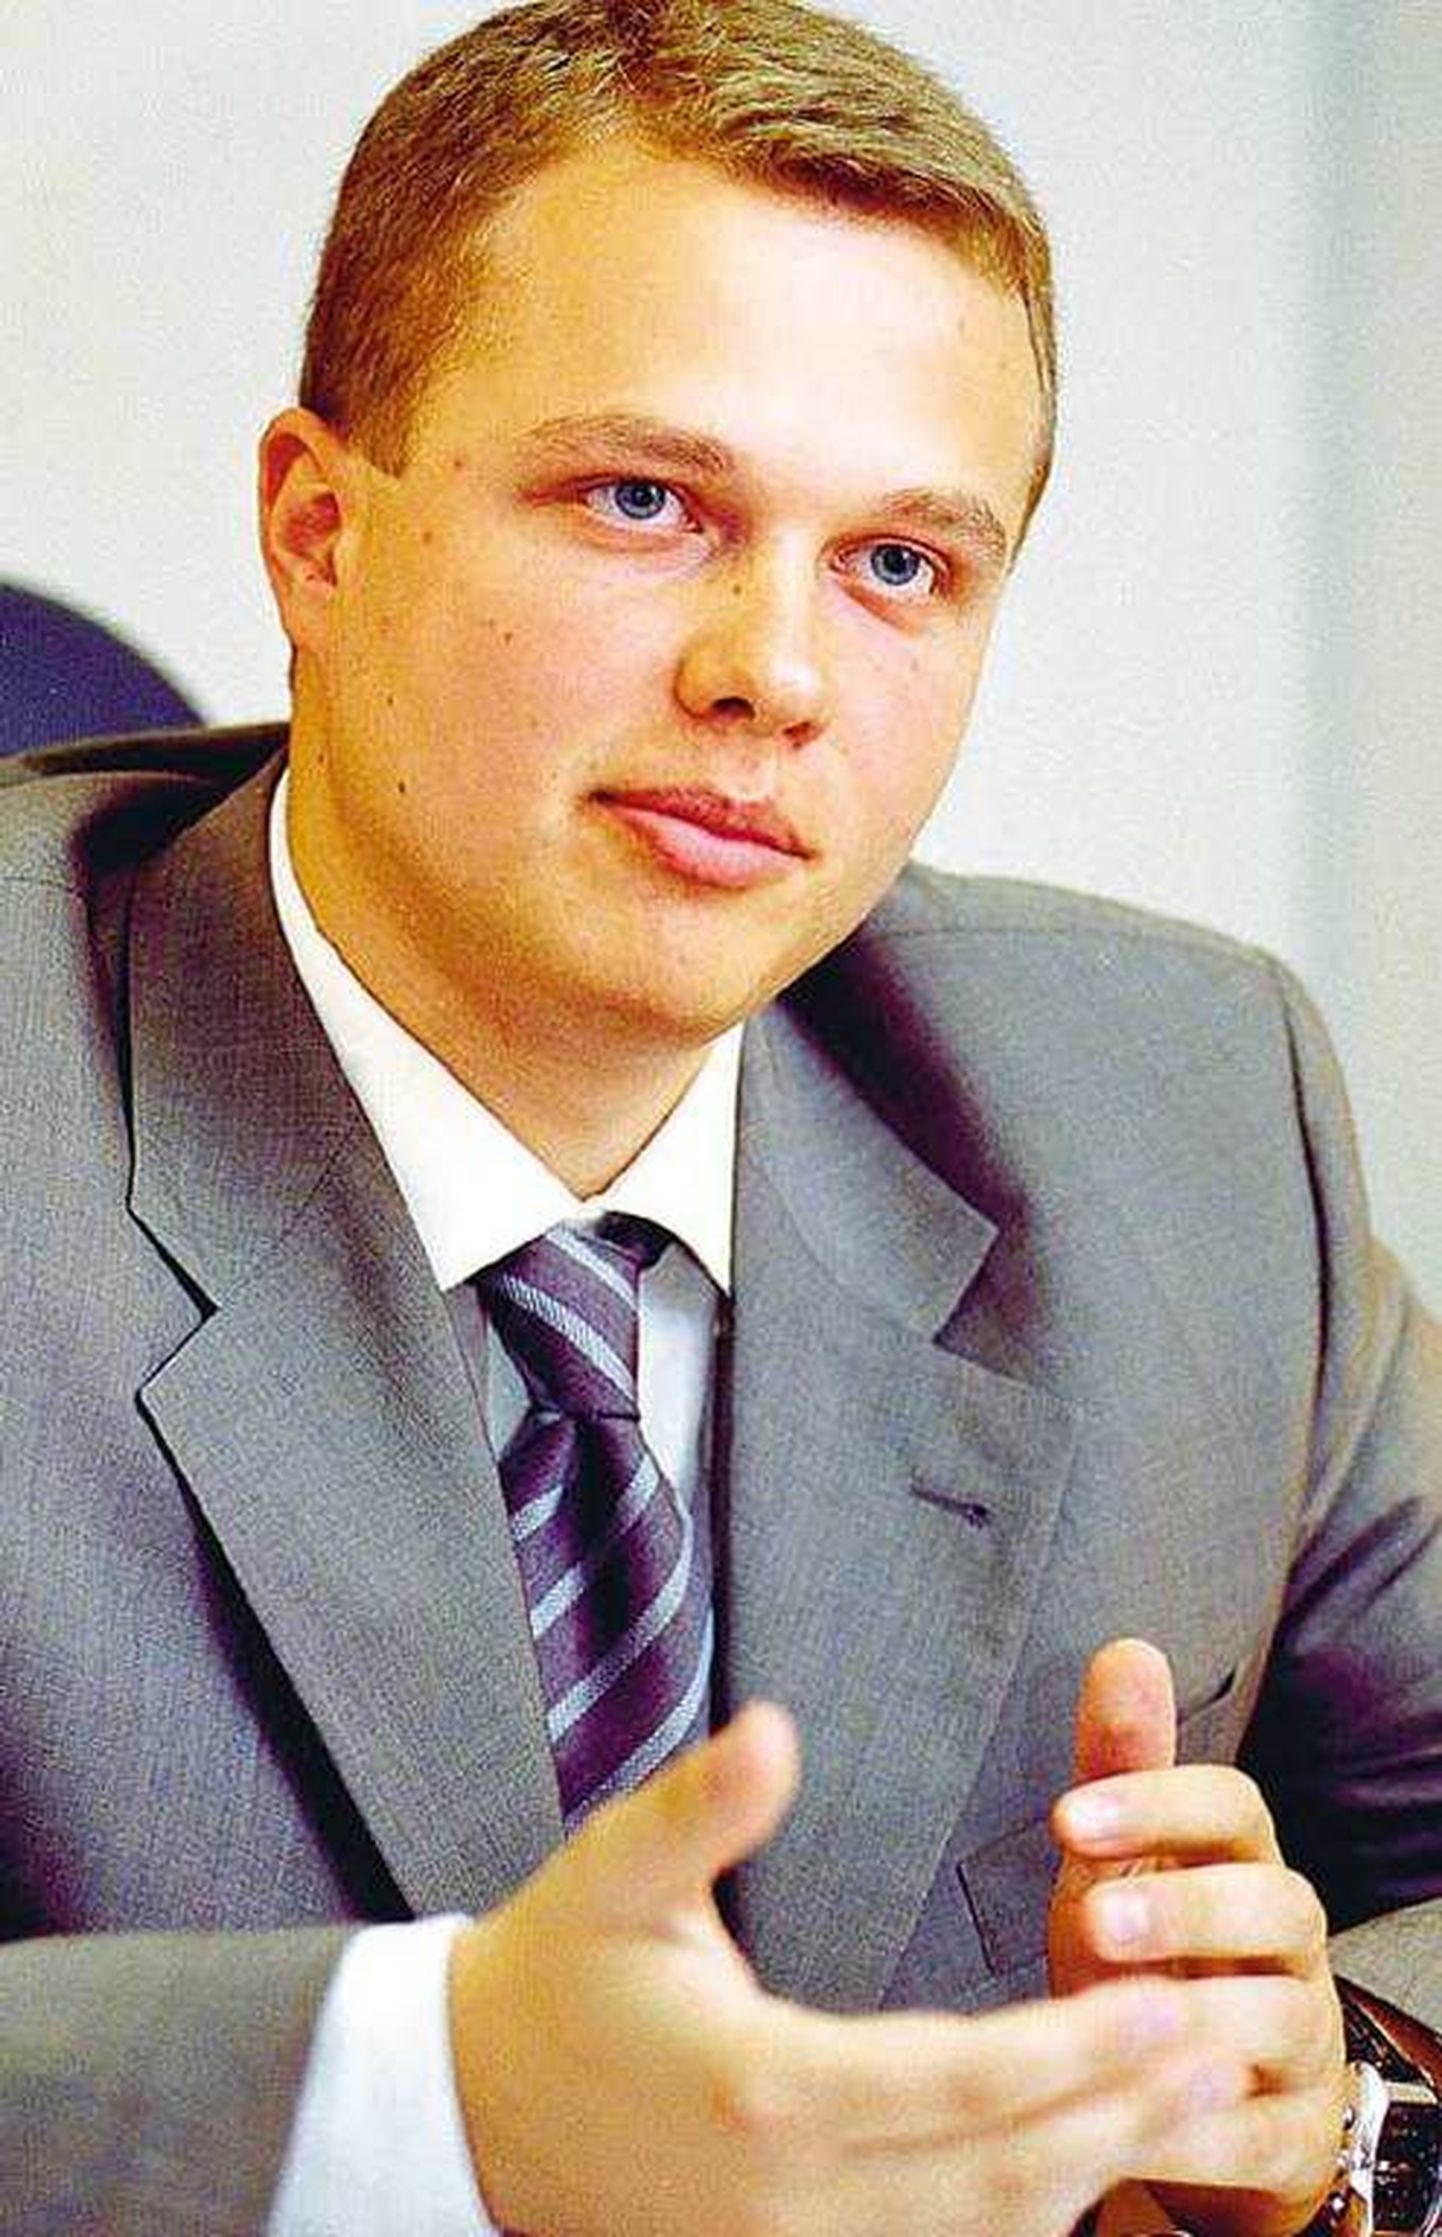 Руководитель департамента транспорта и развития дорожно-транспортной инфраструктуры Москвы Максим Ликсутов.